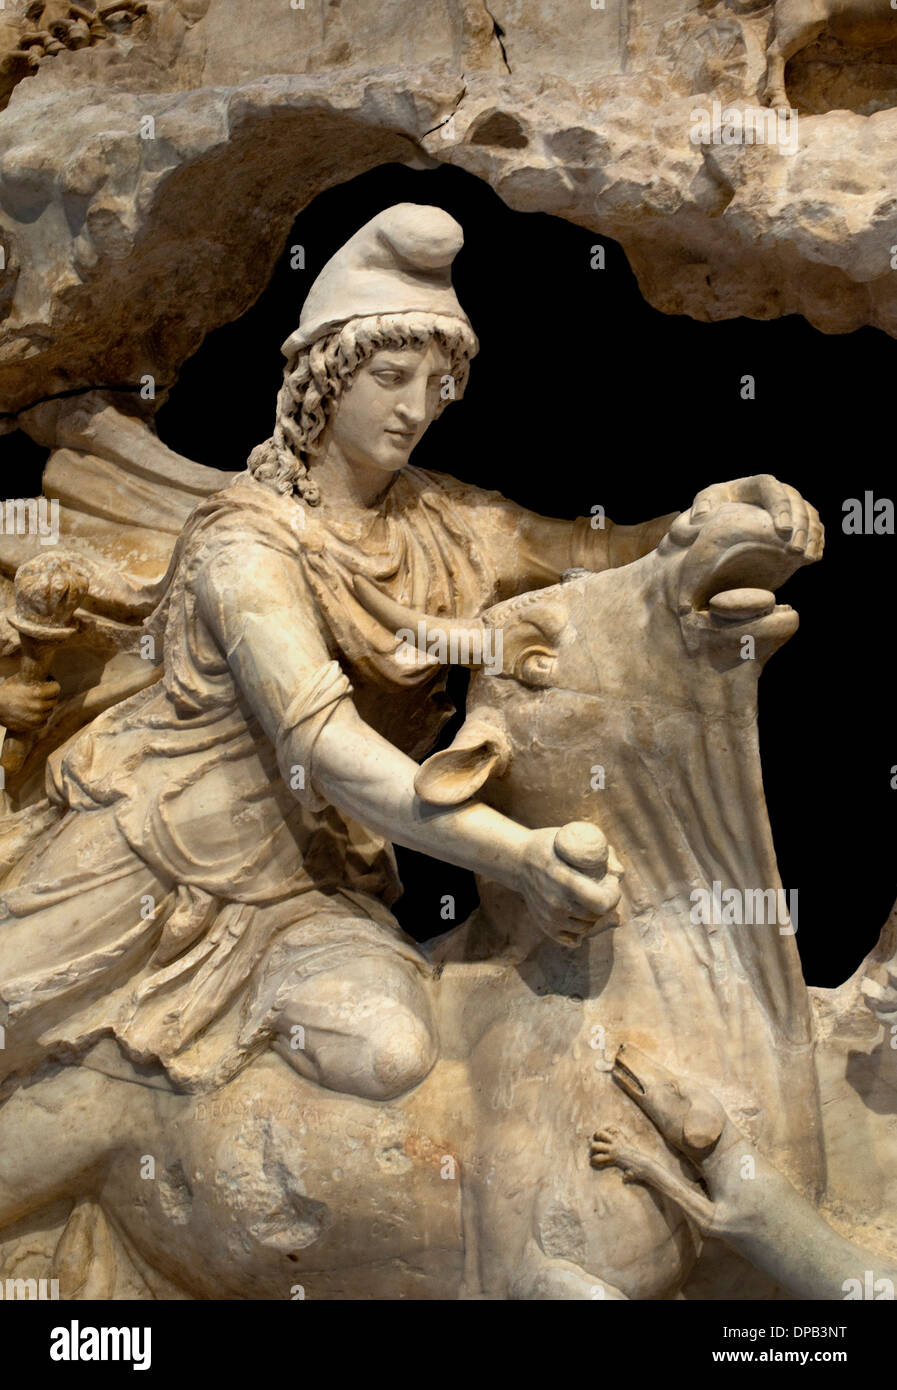 Il sollievo di Mithra iraniano il dio del sole di sacrificare il toro dal Campidoglio romano Roma Italia 100-200 d.c. Foto Stock